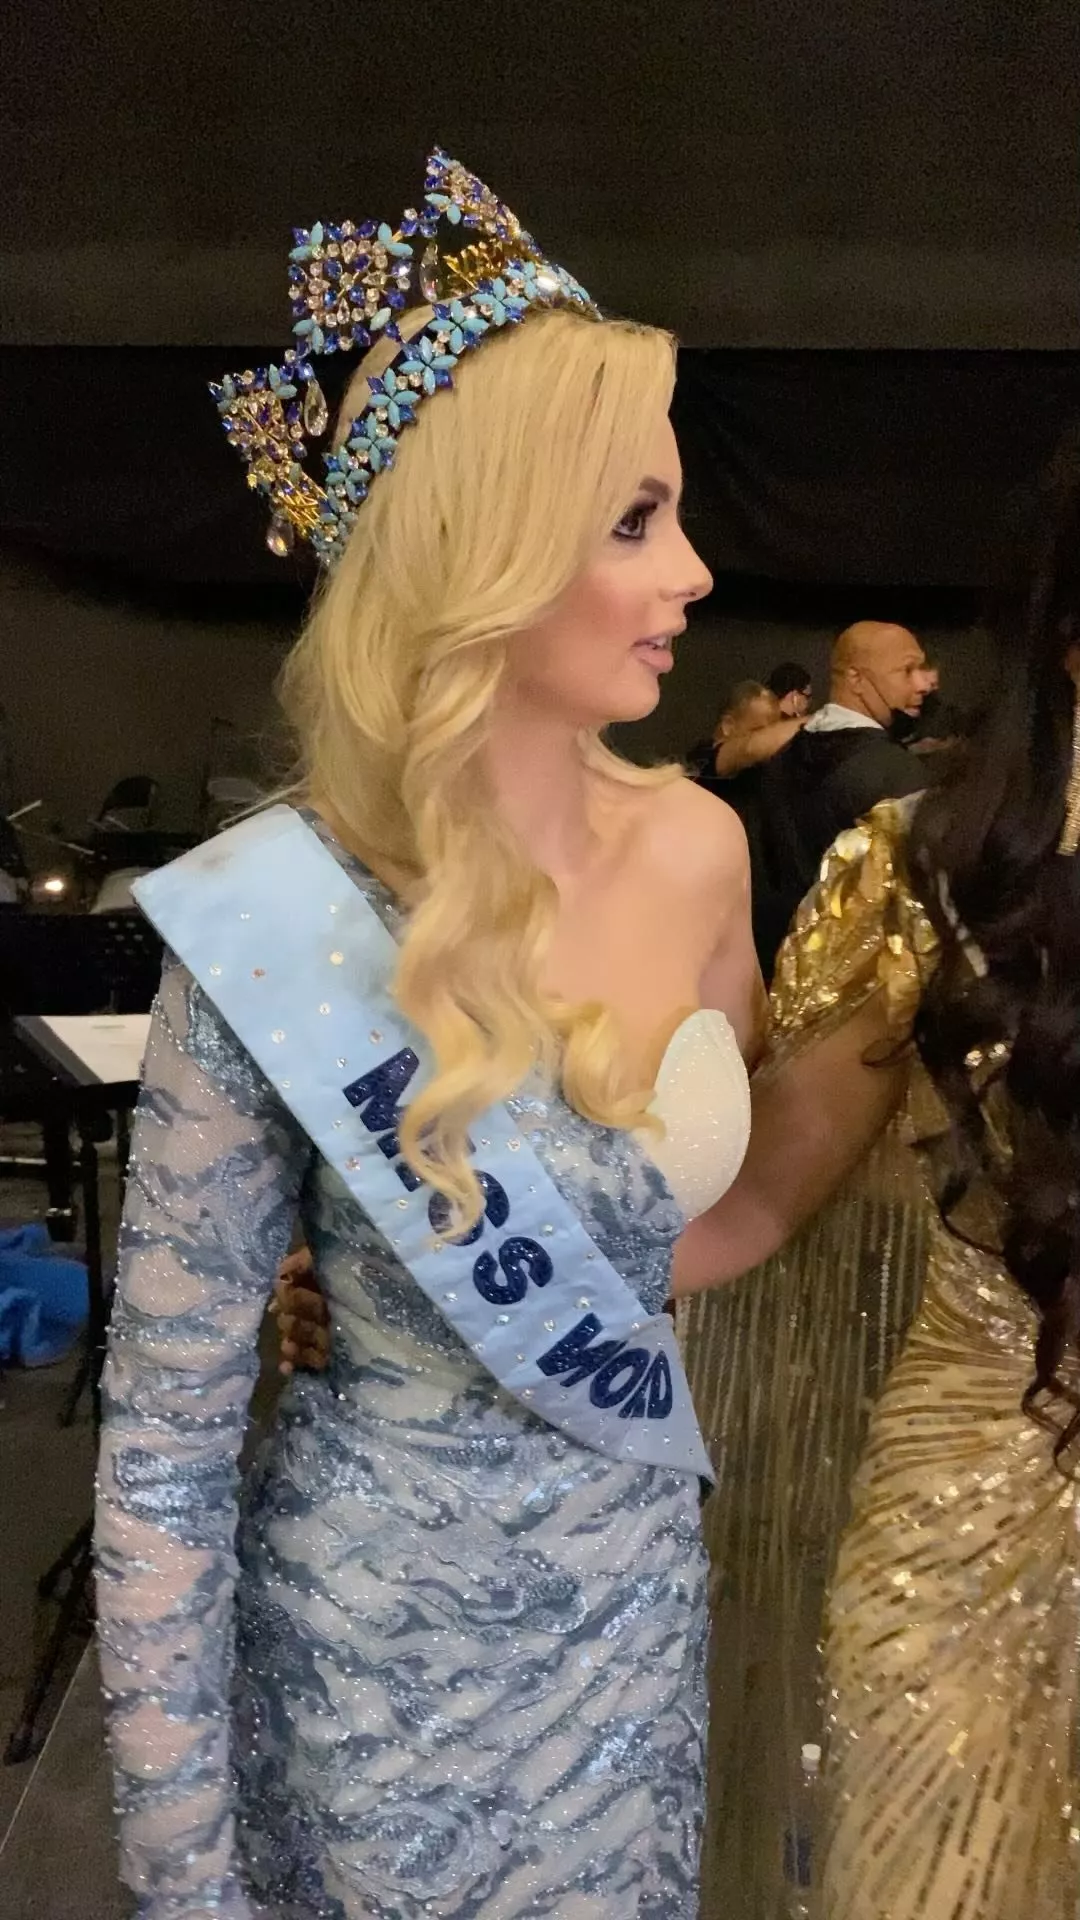 البولاندية كارلوينا بيلاوسكا تتوَّج ملكة جمال العالم لعام 2021